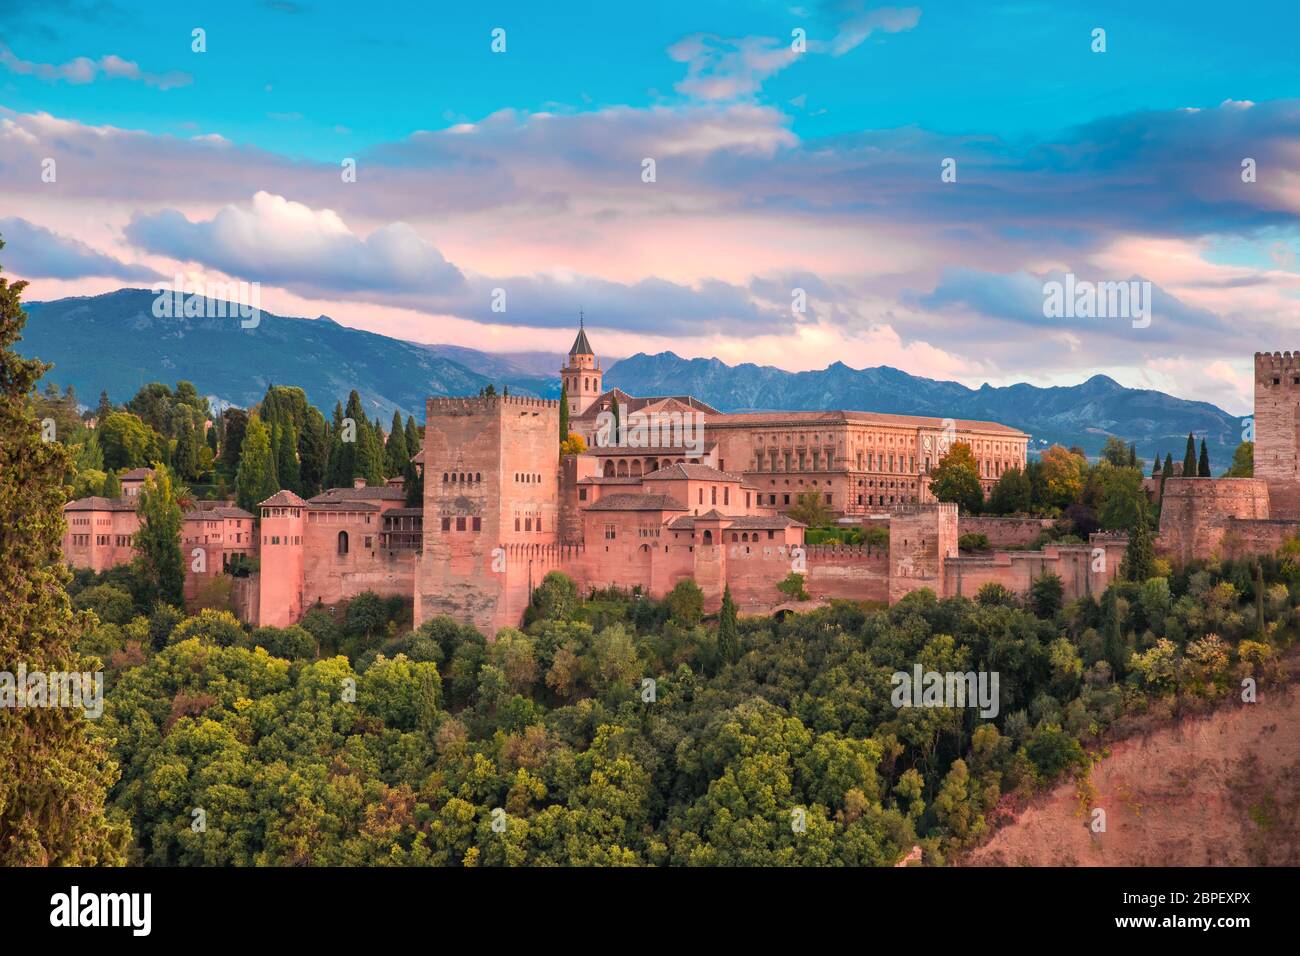 Schloss und Festungsanlage Alhambra mit Comares Tower, Palacios Nazaries und Palast von Karl V bei Sonnenuntergang in Granada, Andalusien, Spanien Stockfoto